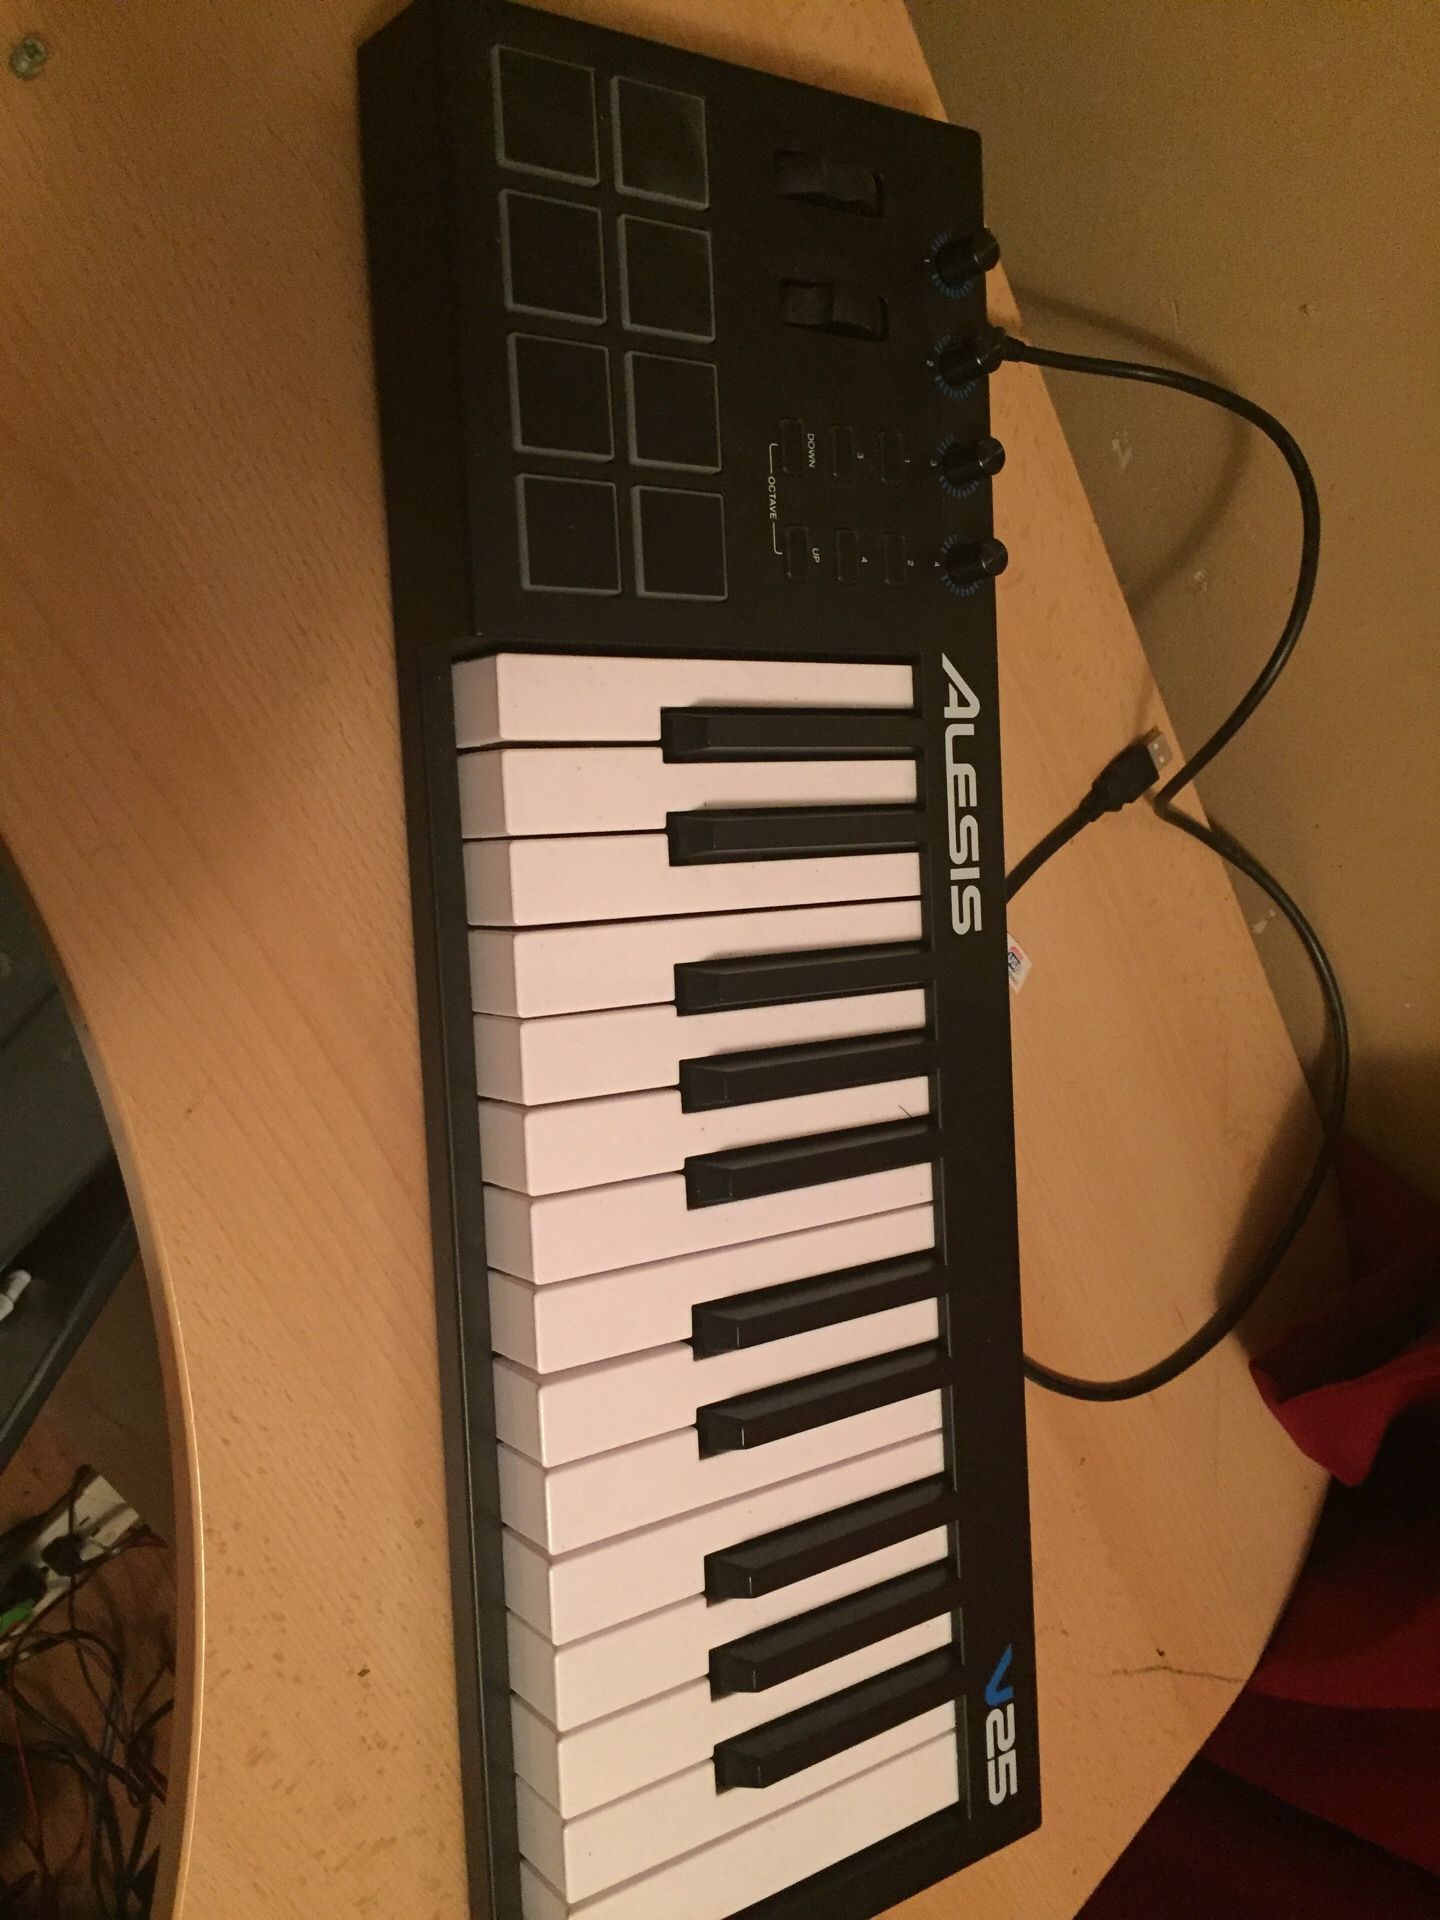 Alesis 25 keyboard